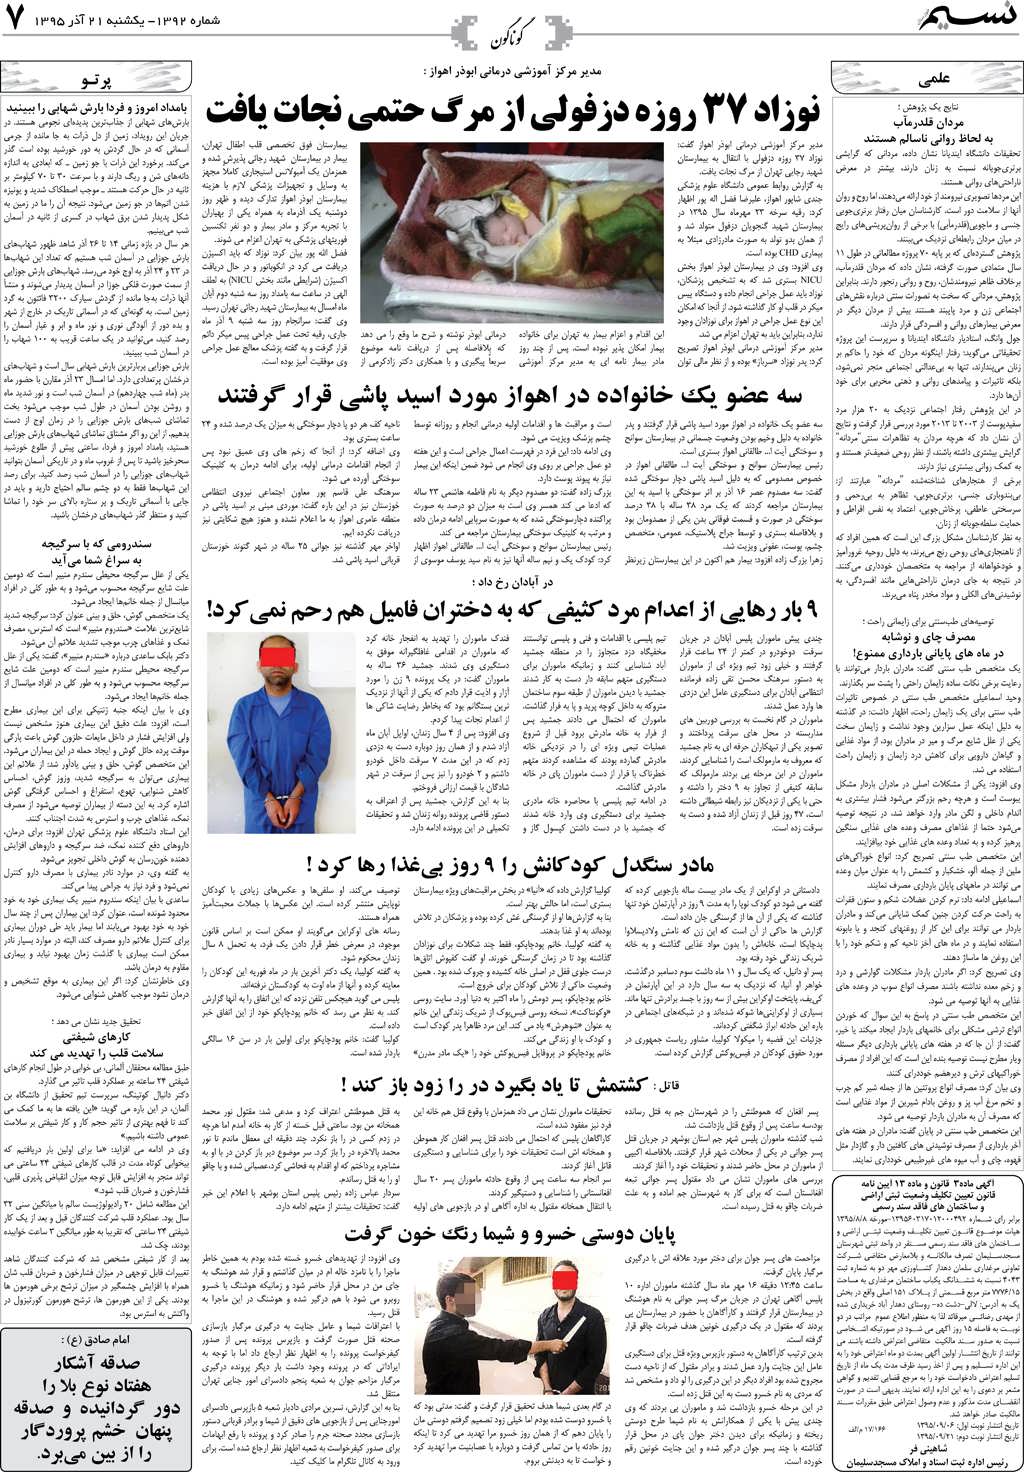 صفحه گوناگون روزنامه نسیم شماره 1392